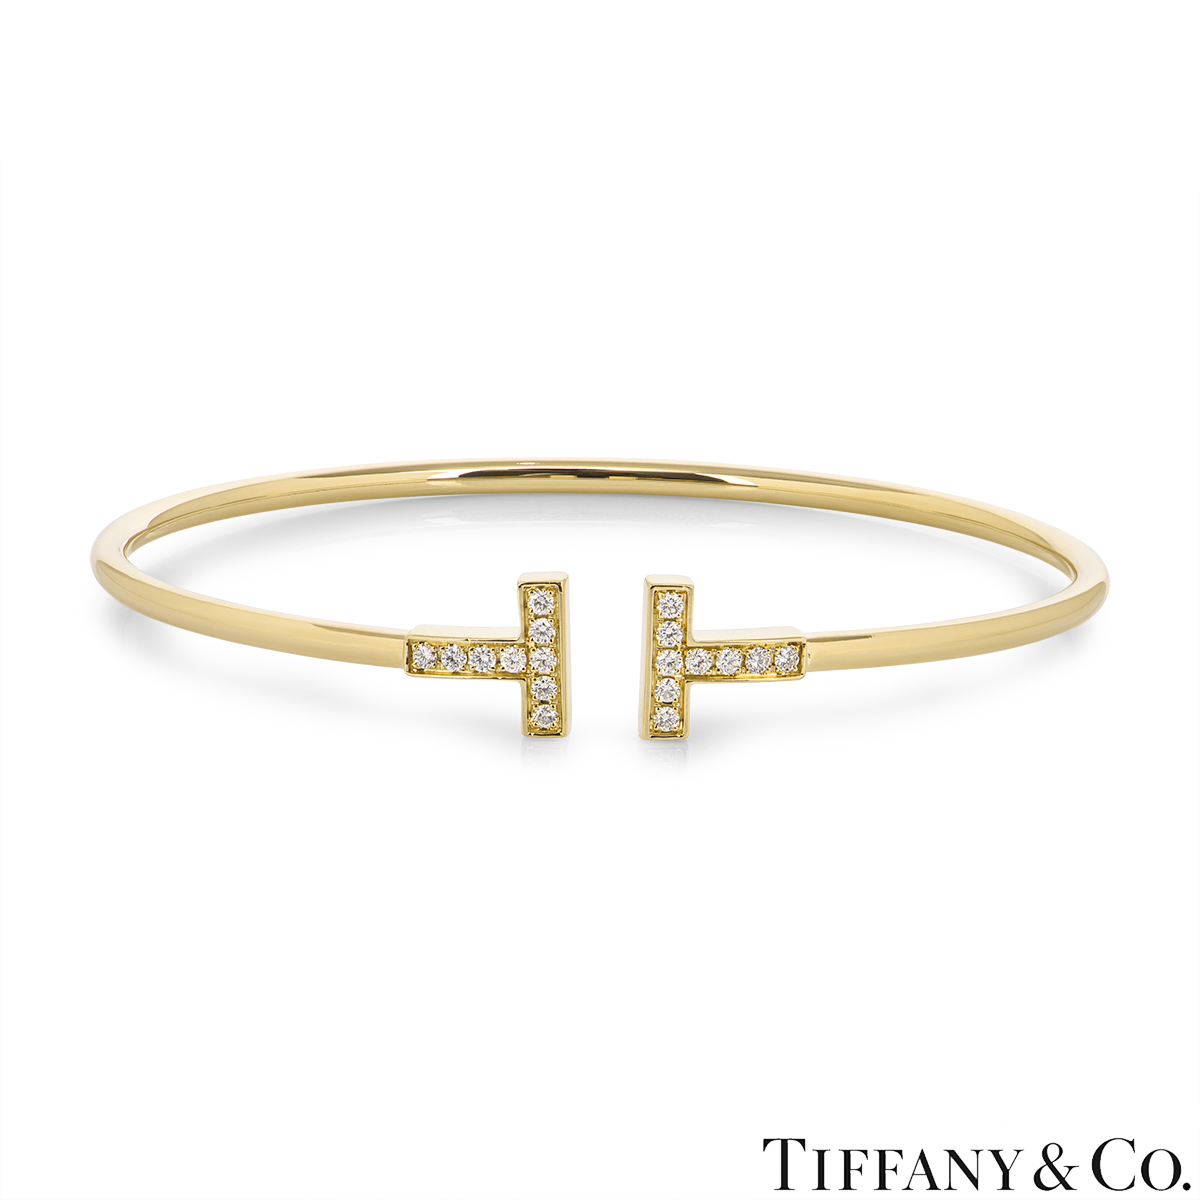 Tiffany & Co. Yellow Gold Tiffany T Diamond Bracelet